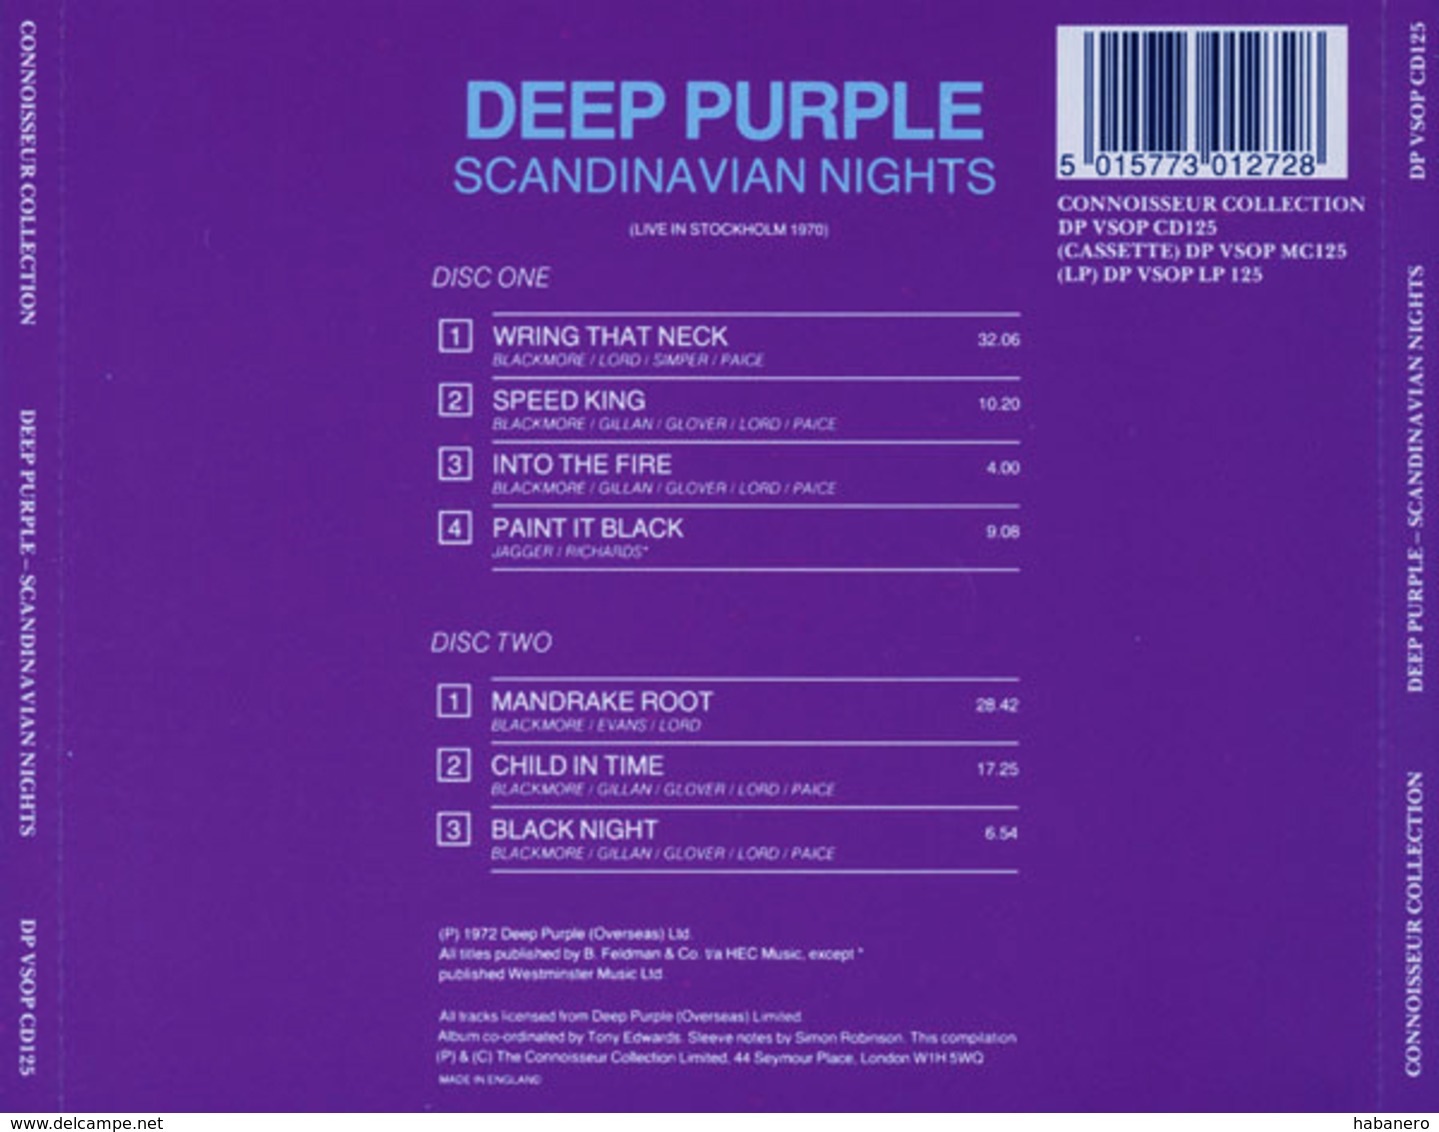 DEEP PURPLE - SCANDINAVIAN NIGHTS 2CD (LIVE IN STOCKHOLM 1970) - Rock